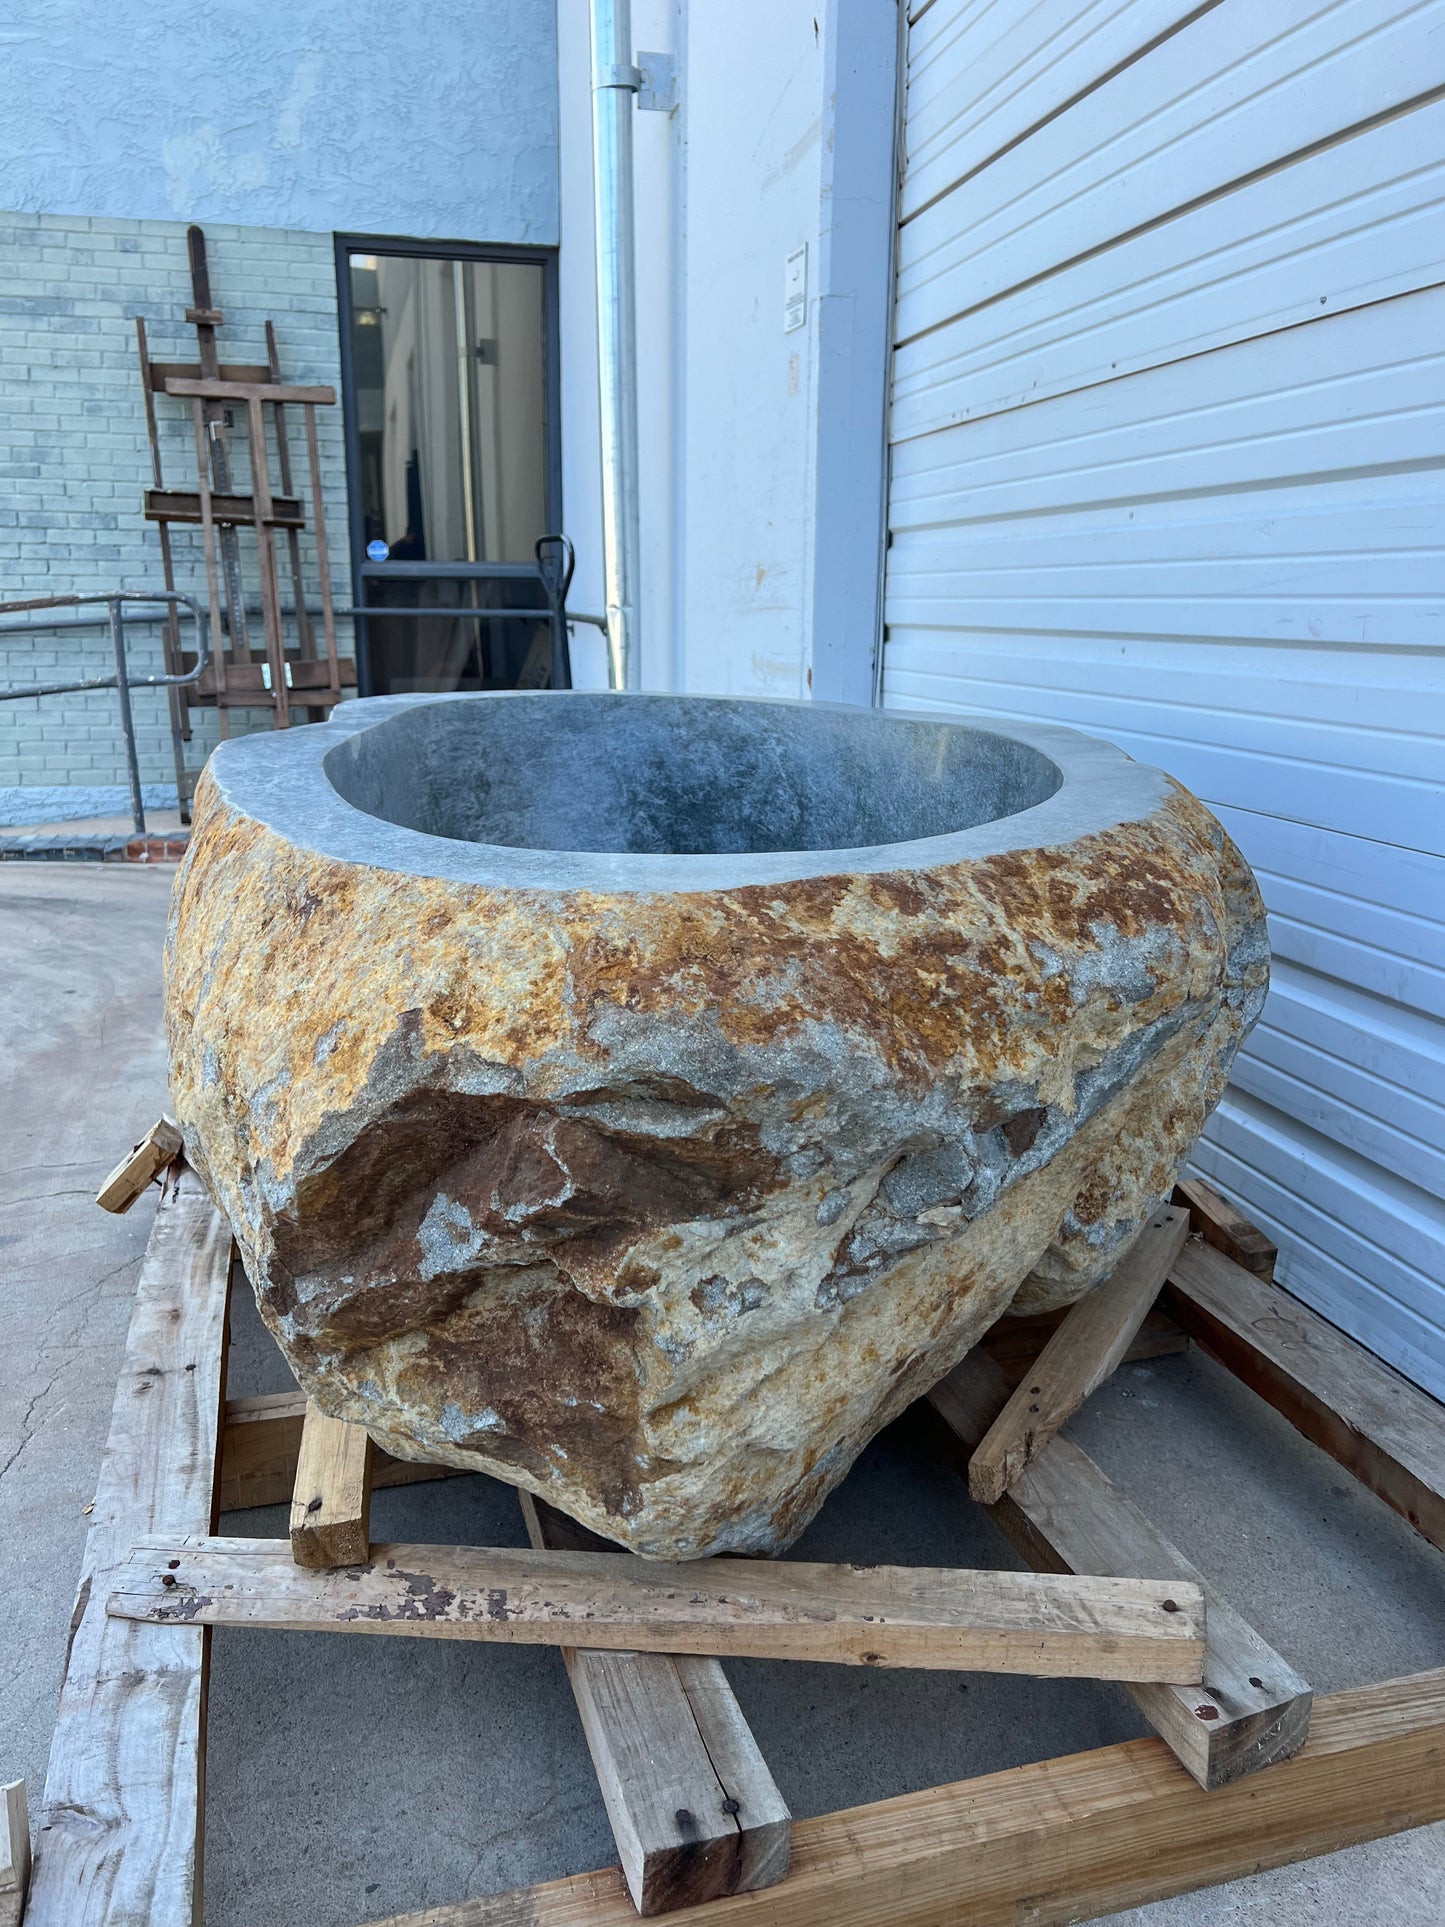 Stone Bath Tub